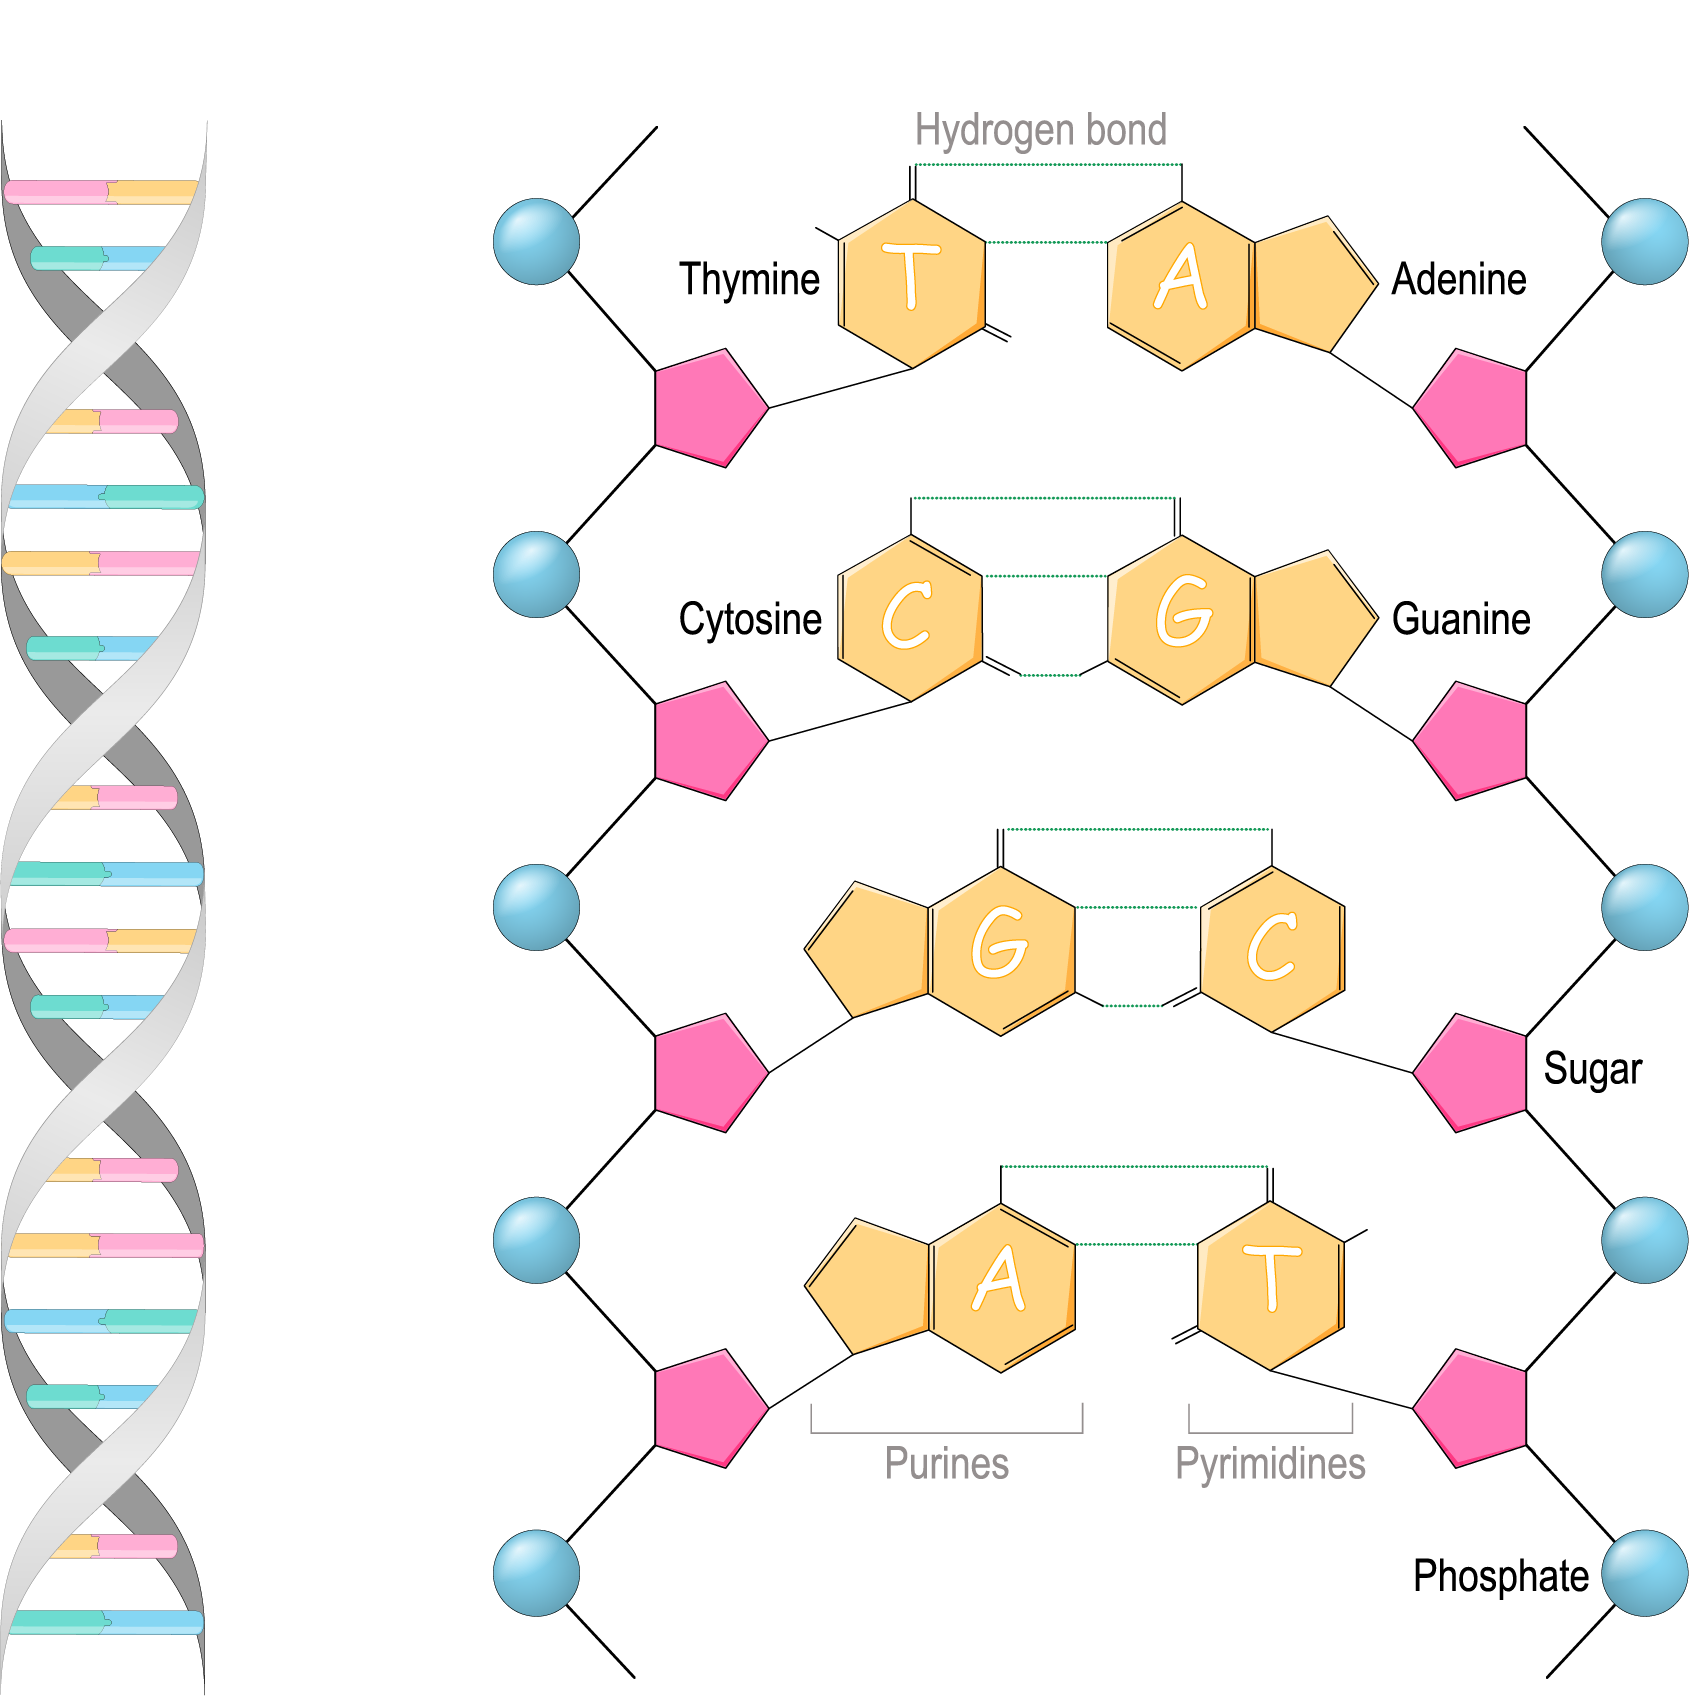 DNA双螺旋的位置和结构图示突出显示了维持每一生物体基因特异性的成分。